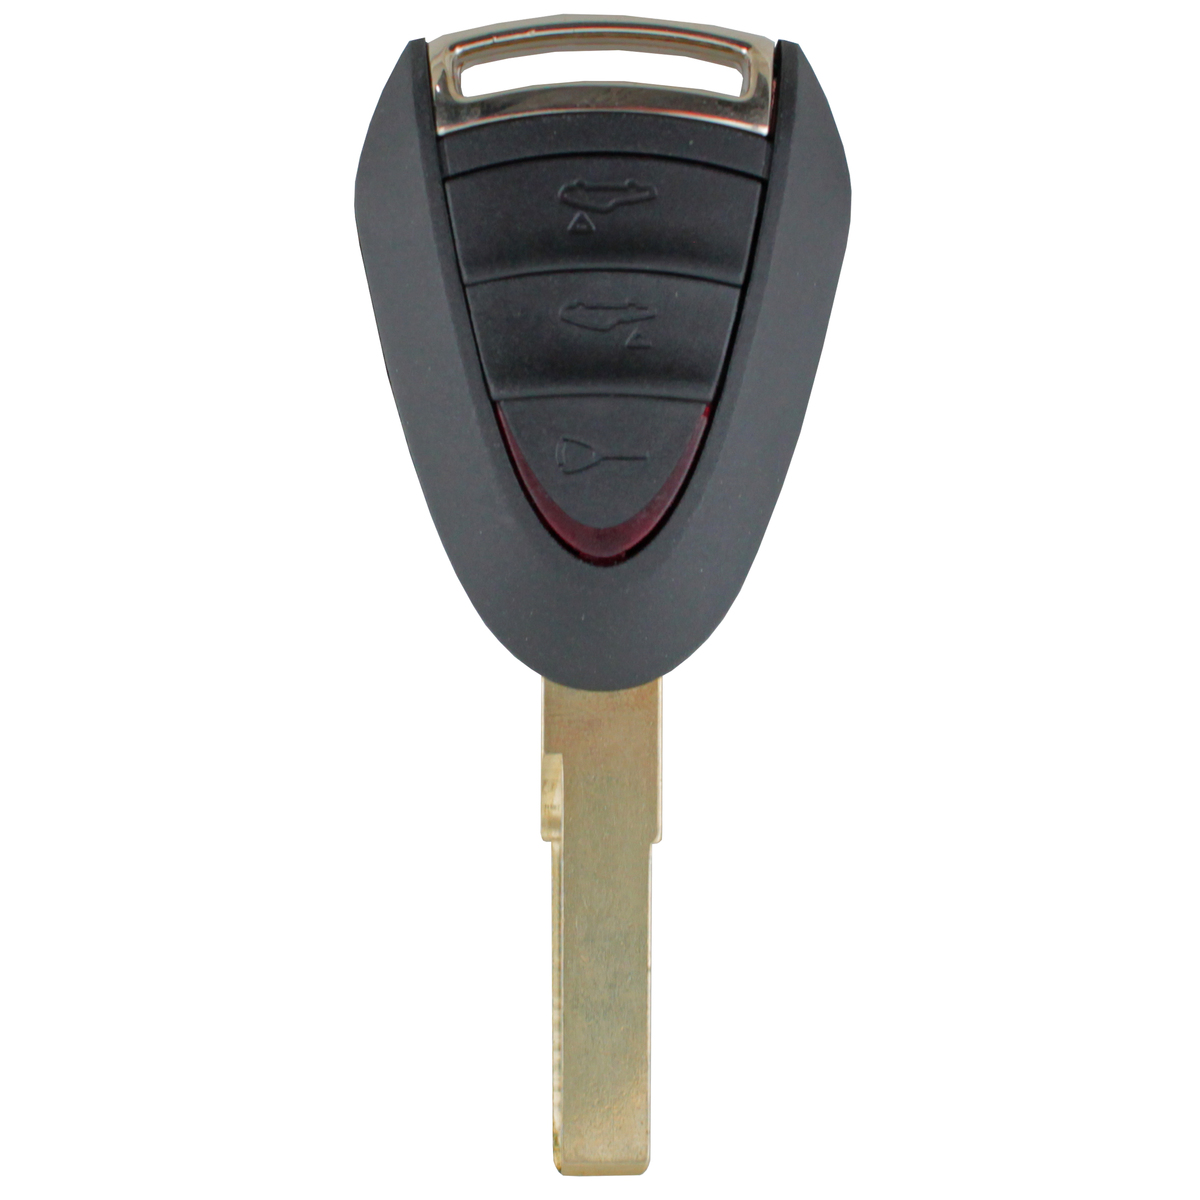 To Suit Porsche Boxster 3 Button Remote/Key Case